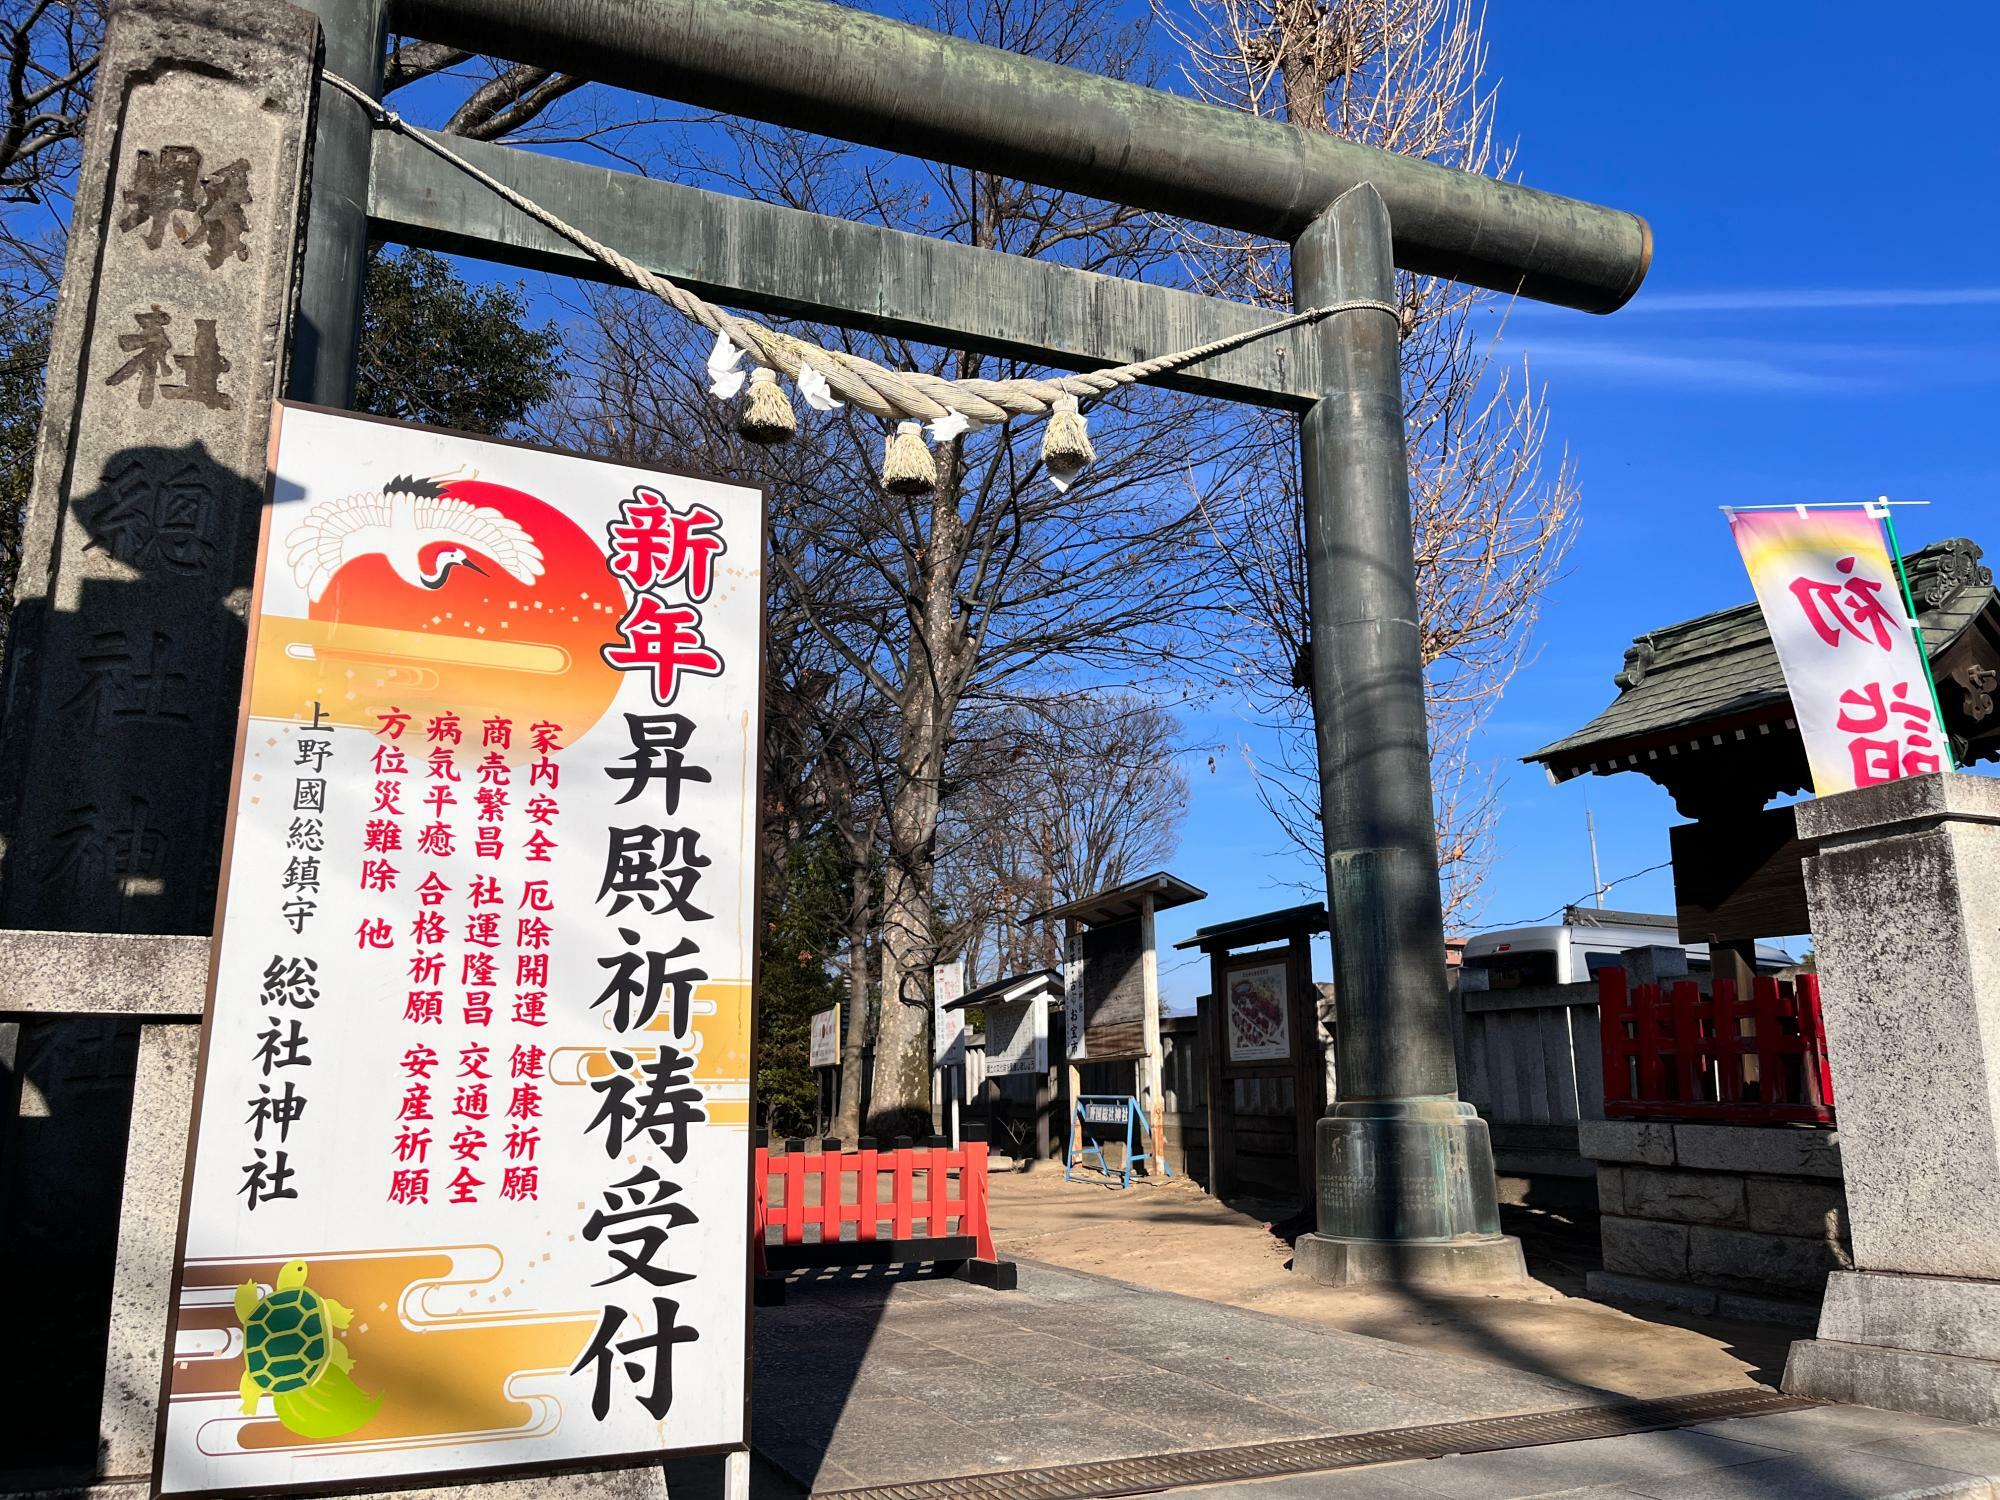 「上野國総鎮守 総社神社」鳥居前の様子